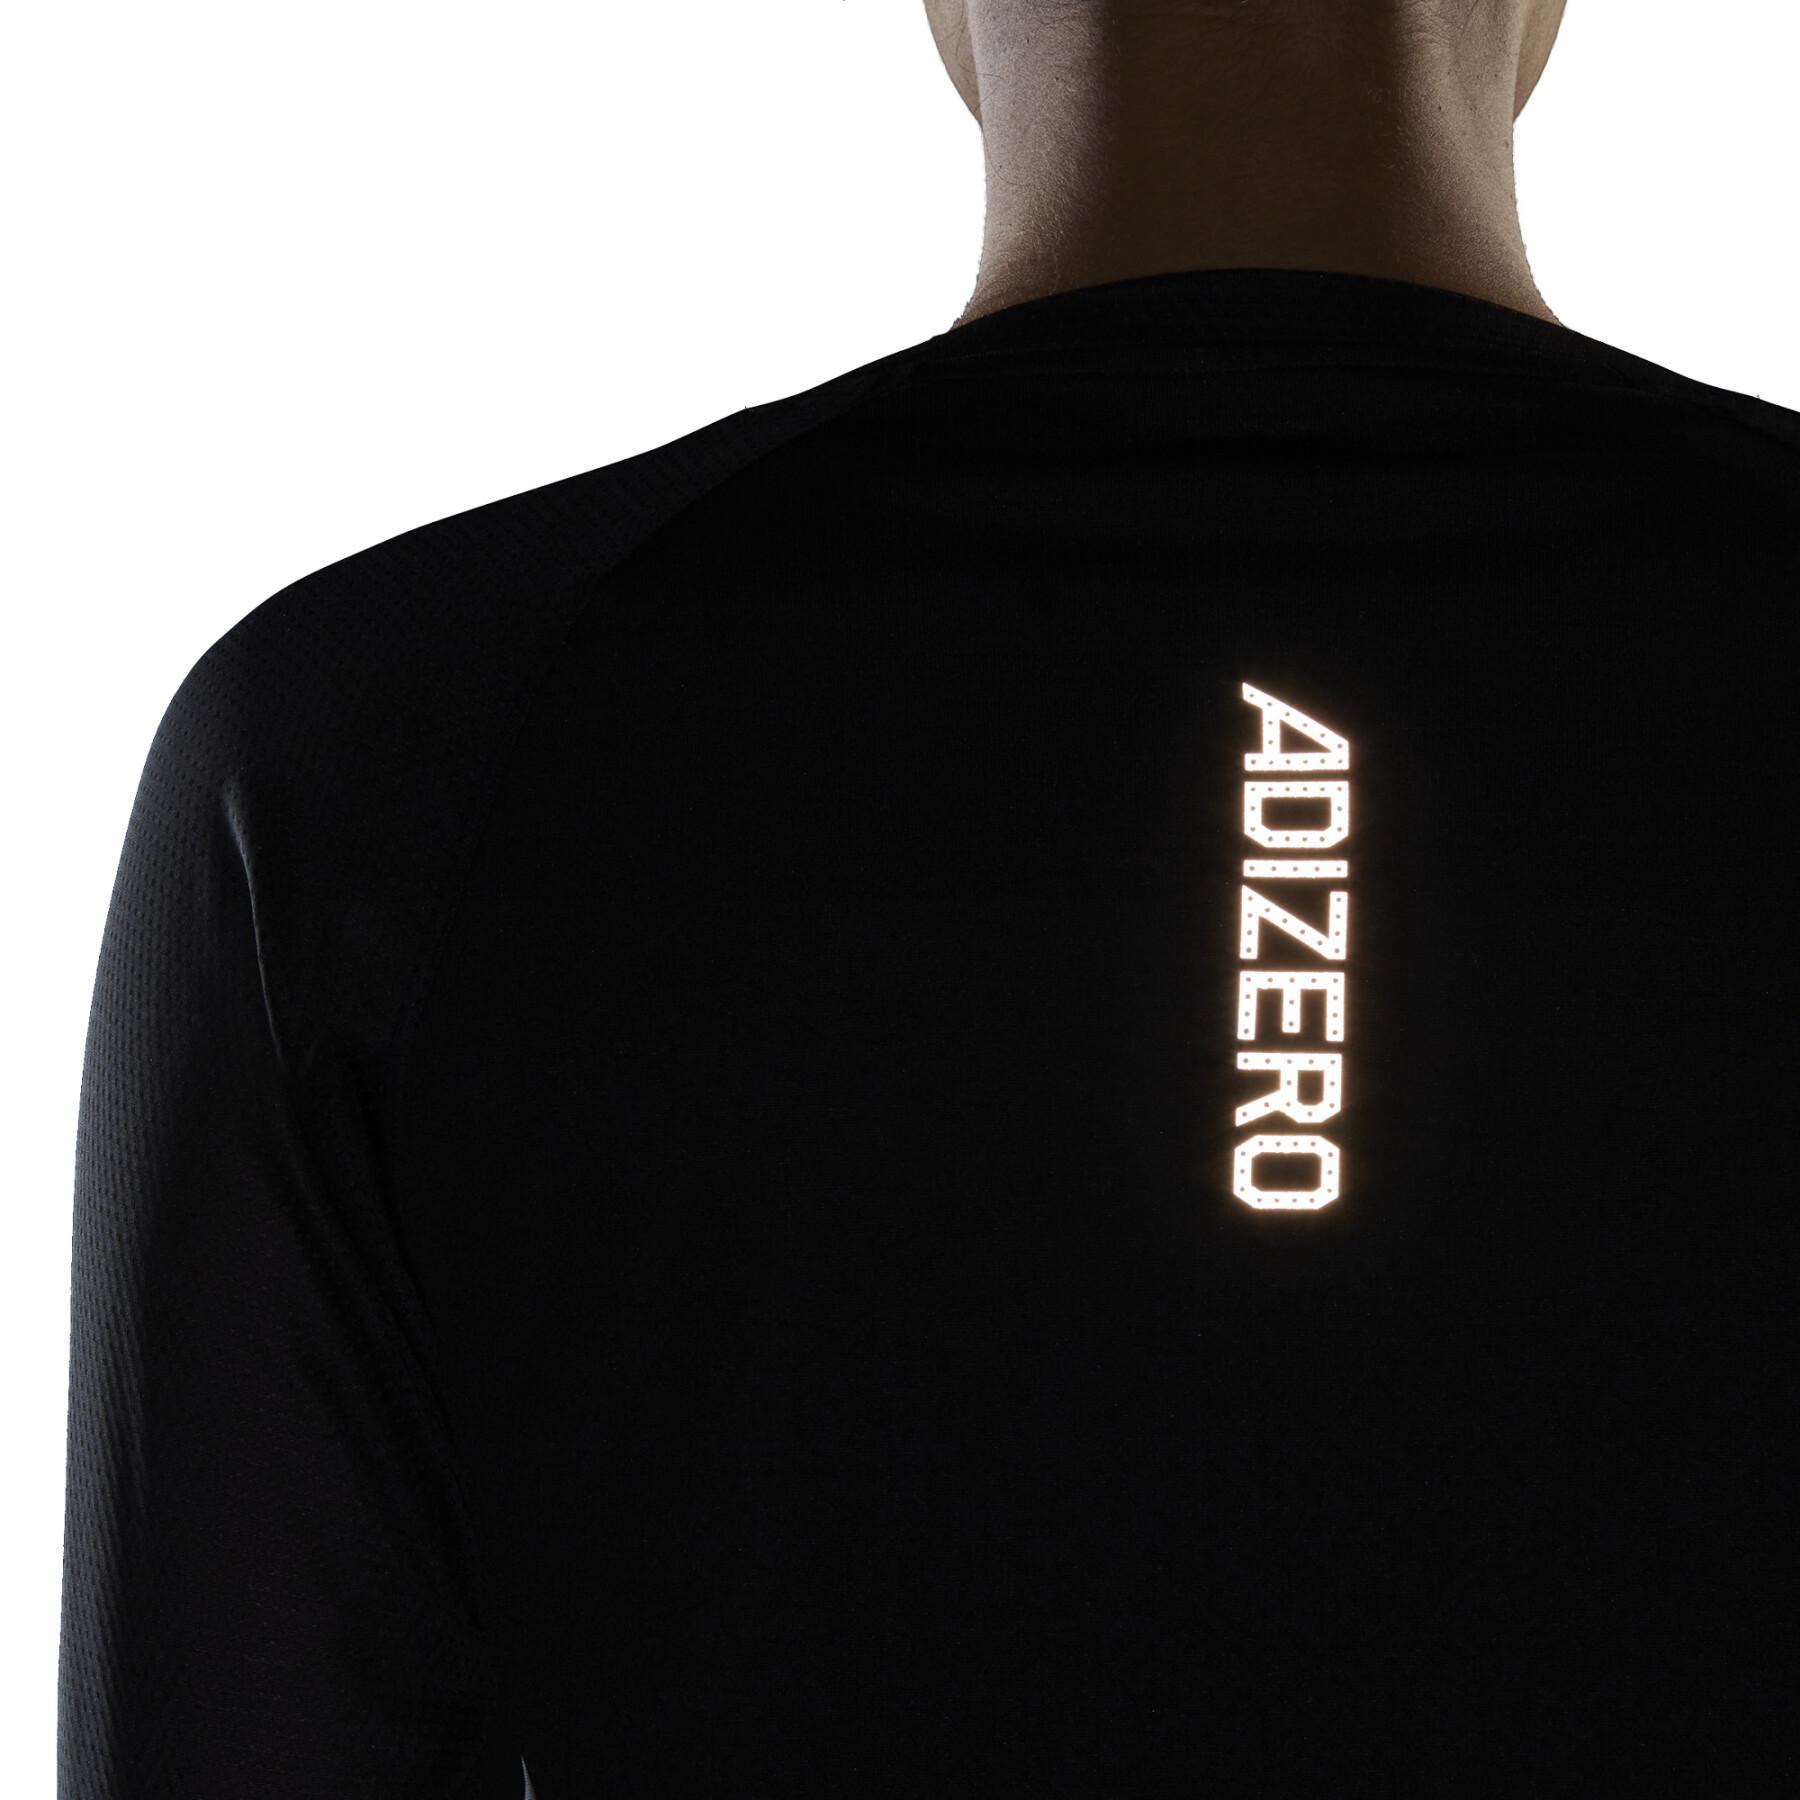 Women's T-shirt adidas Adizero Running